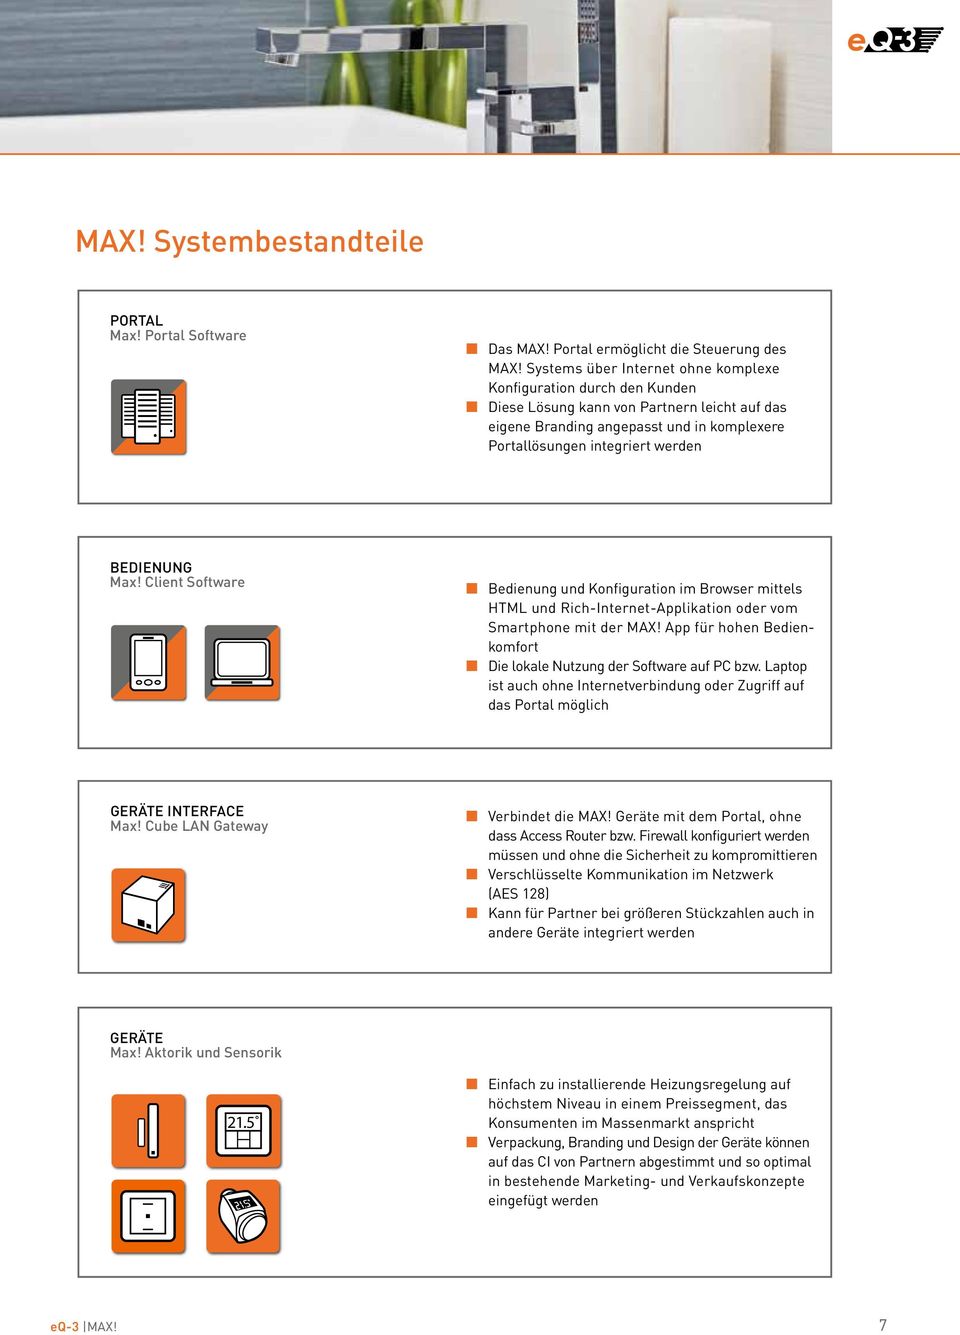 Max! Client Software Bedienung und Konfiguration im Browser mittels HTML und Rich-Internet-Applikation oder vom Smartphone mit der MAX!